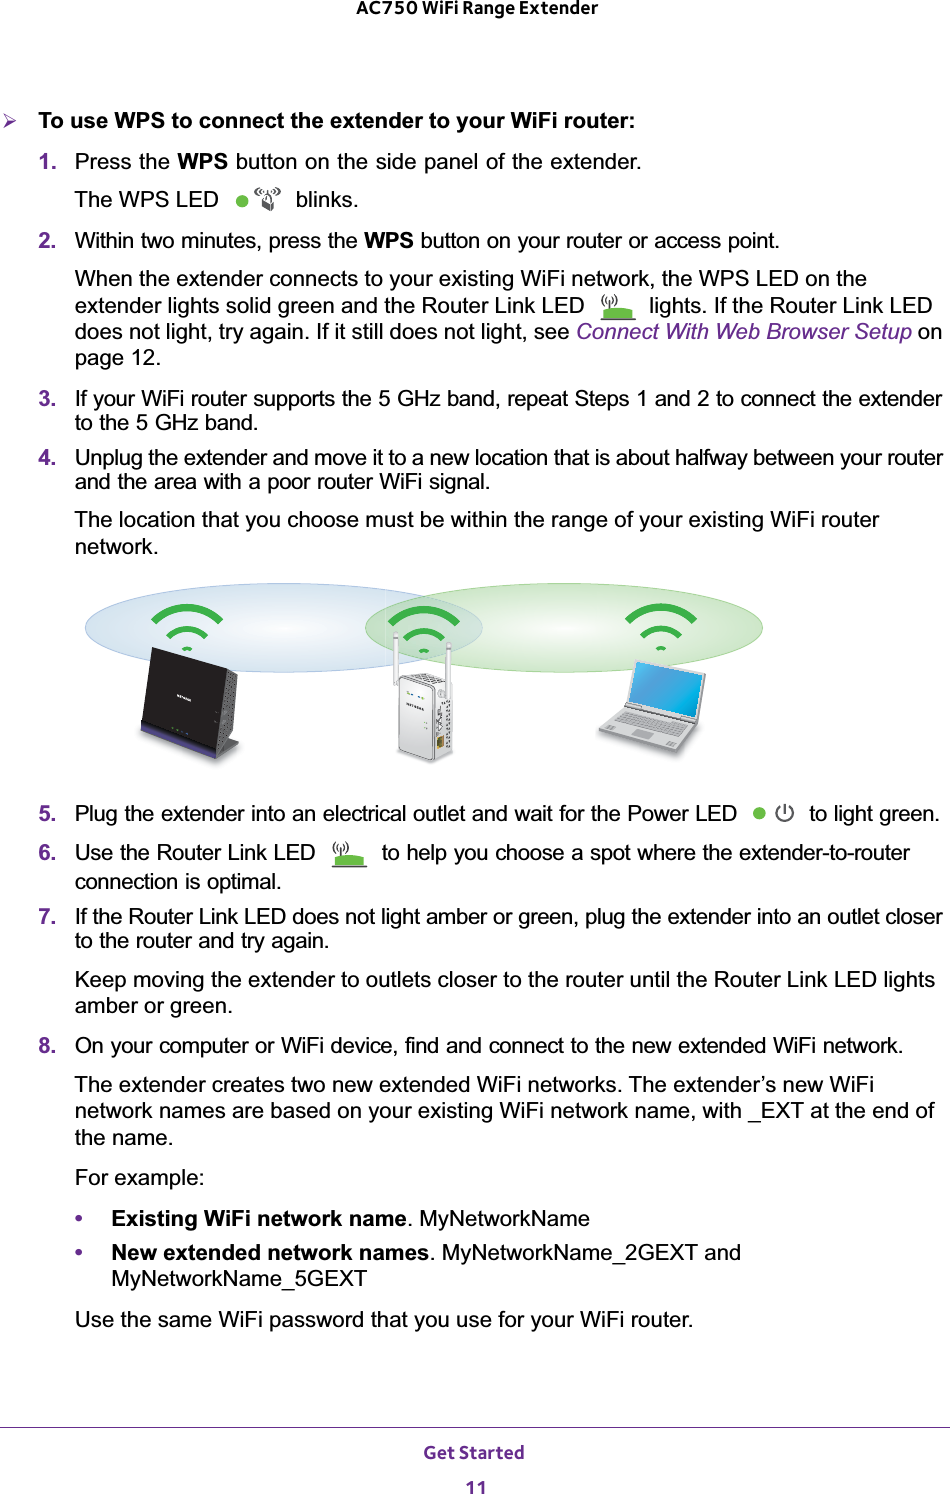 netgear wifi range extender manual